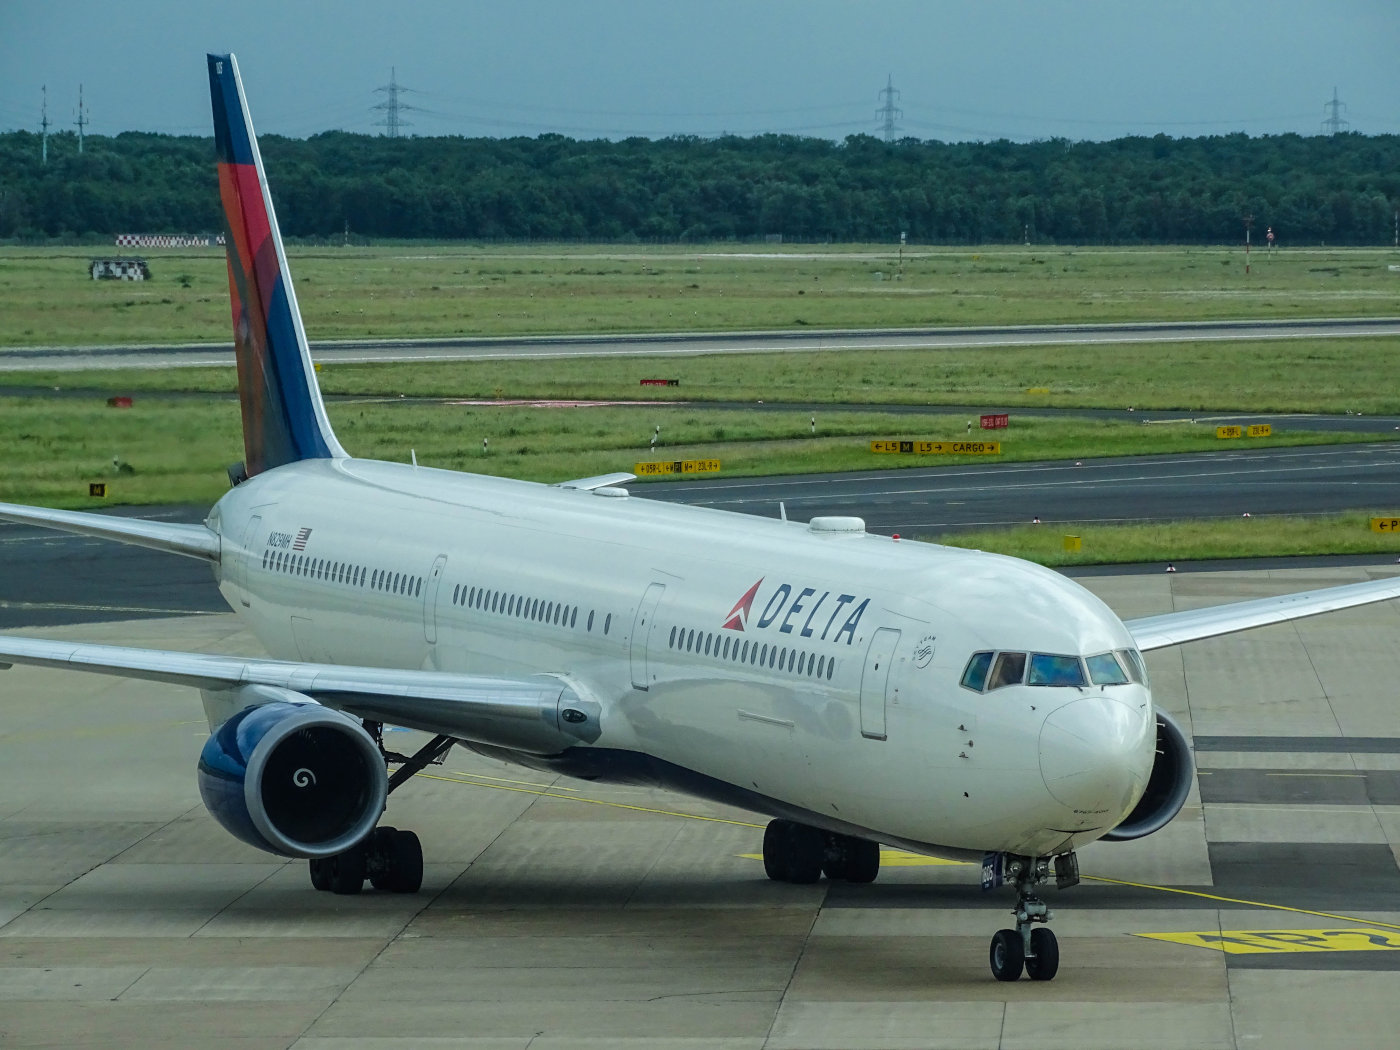 Delta Boeing 767-300 auf dem Flughafen Düsseldorf